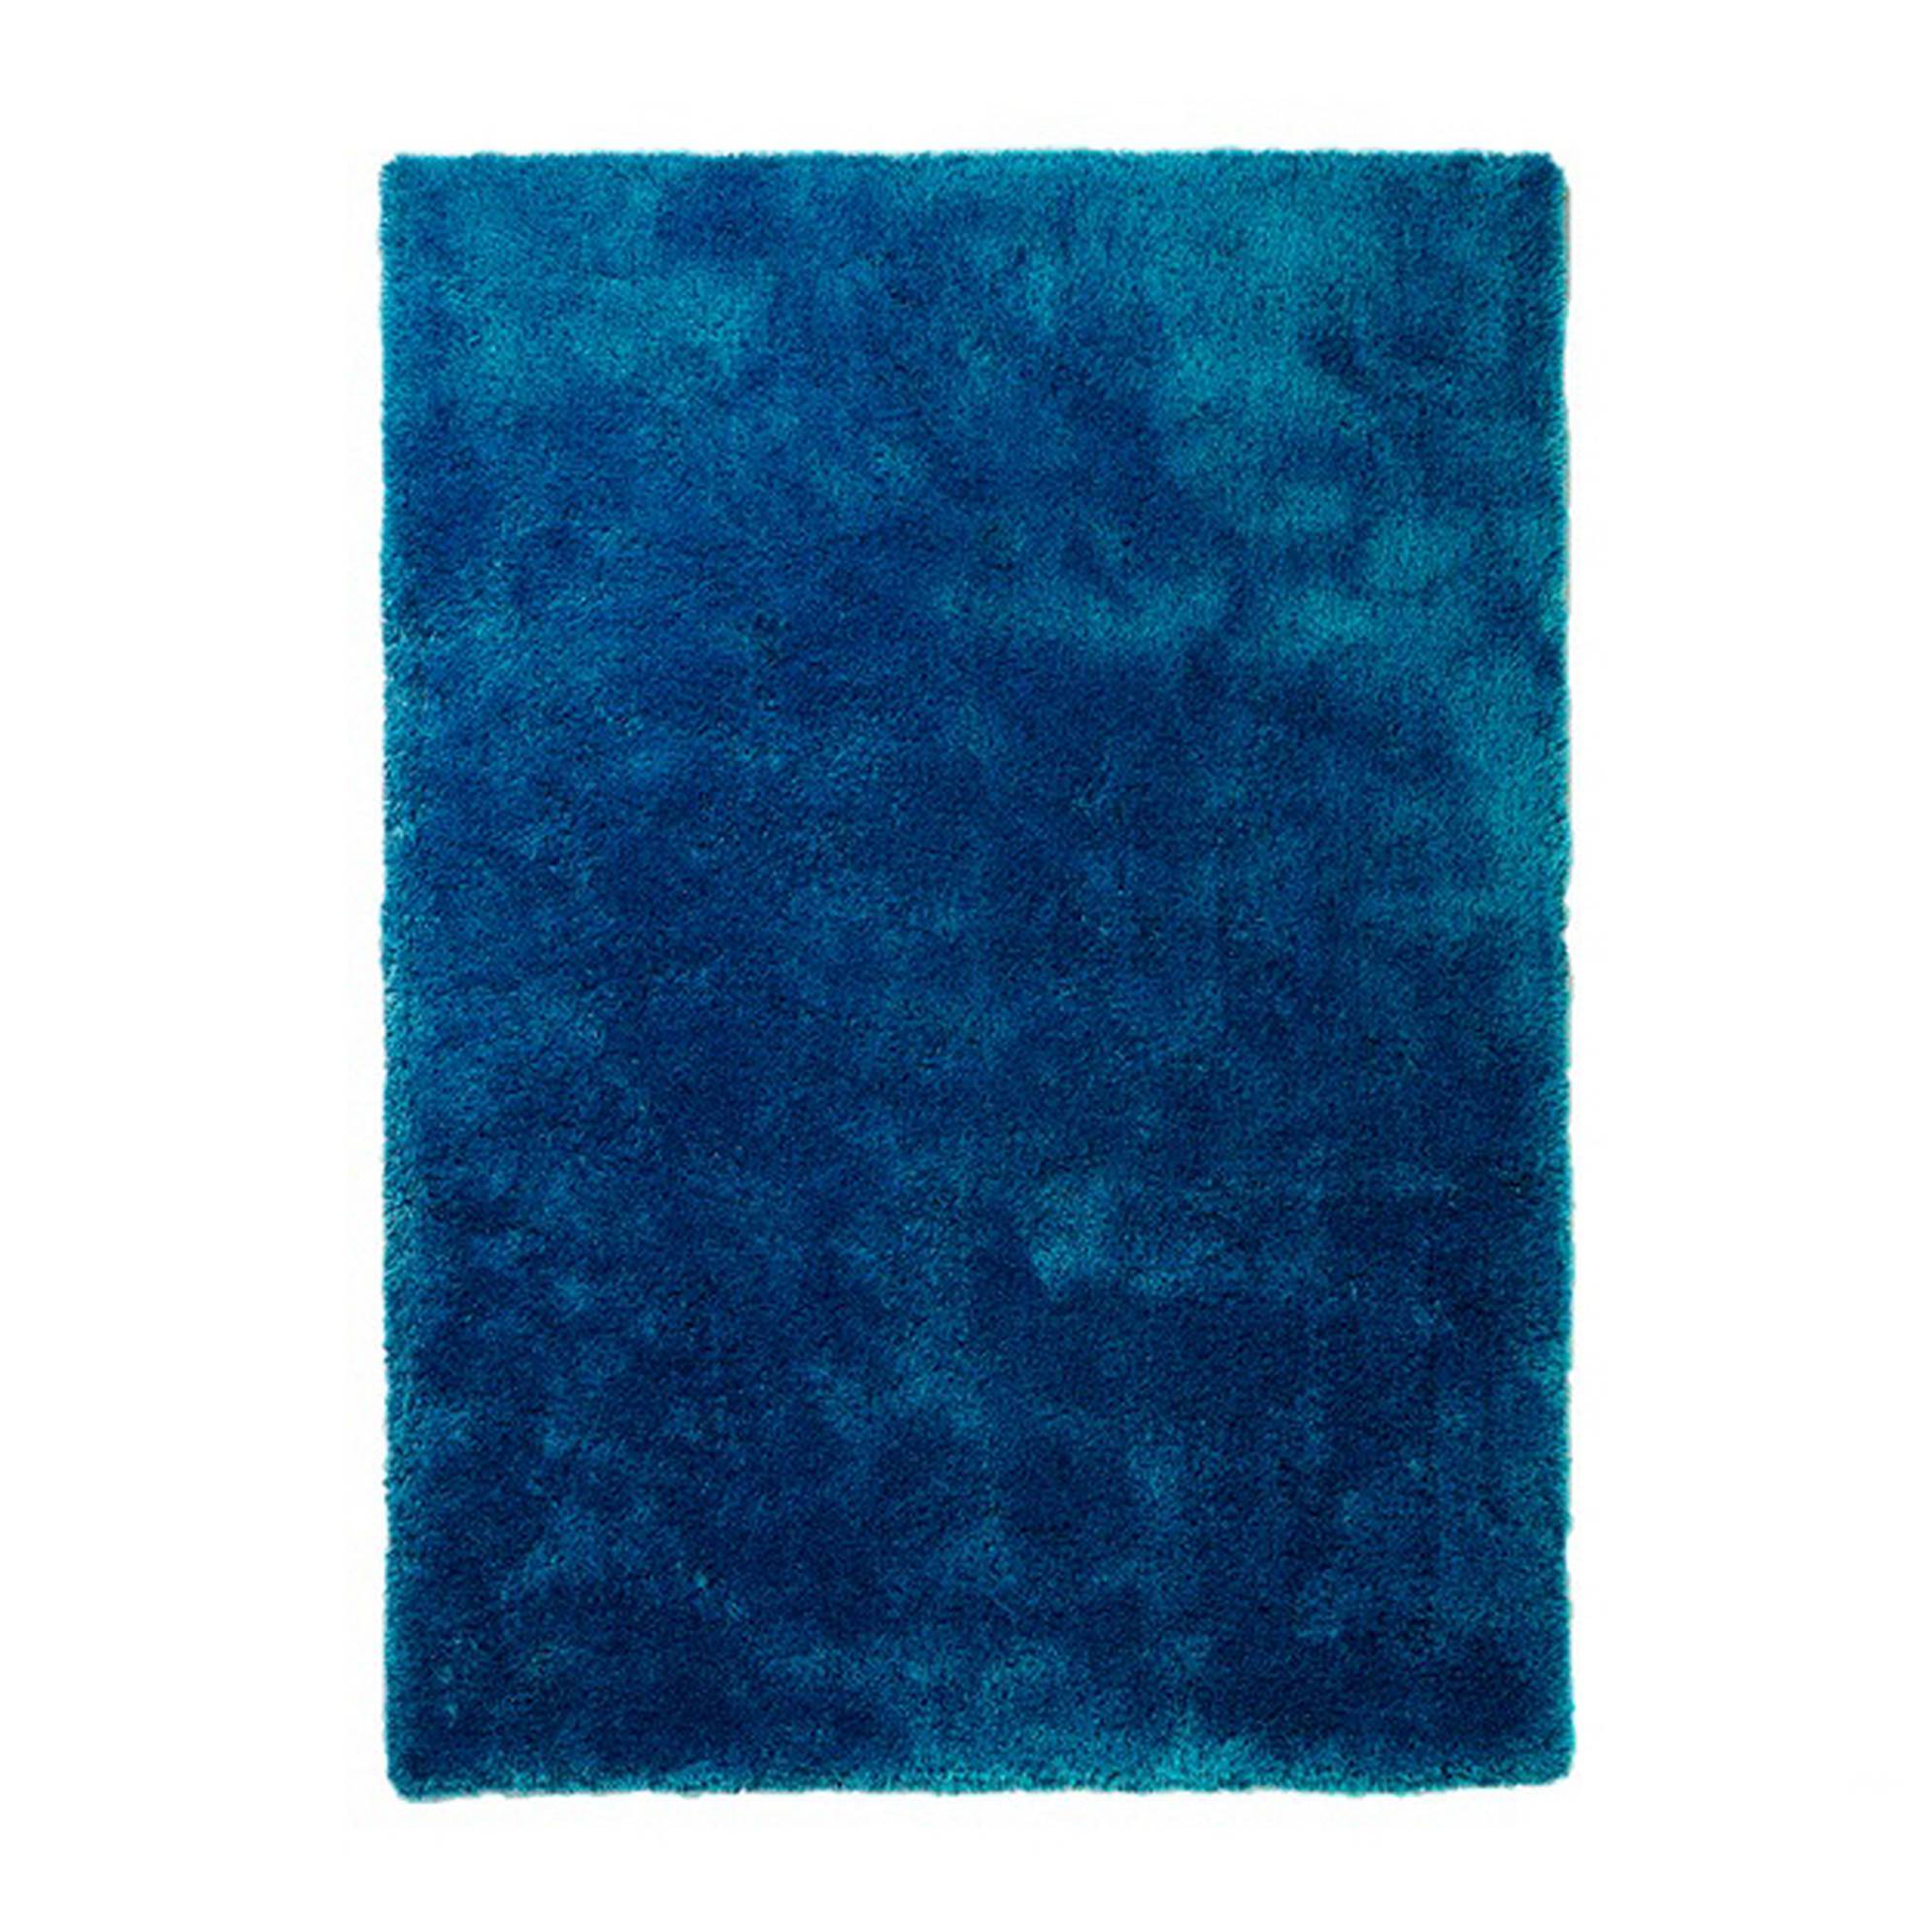 Teppich Estero - Blau - 90 x 160 cm, Colourcourage